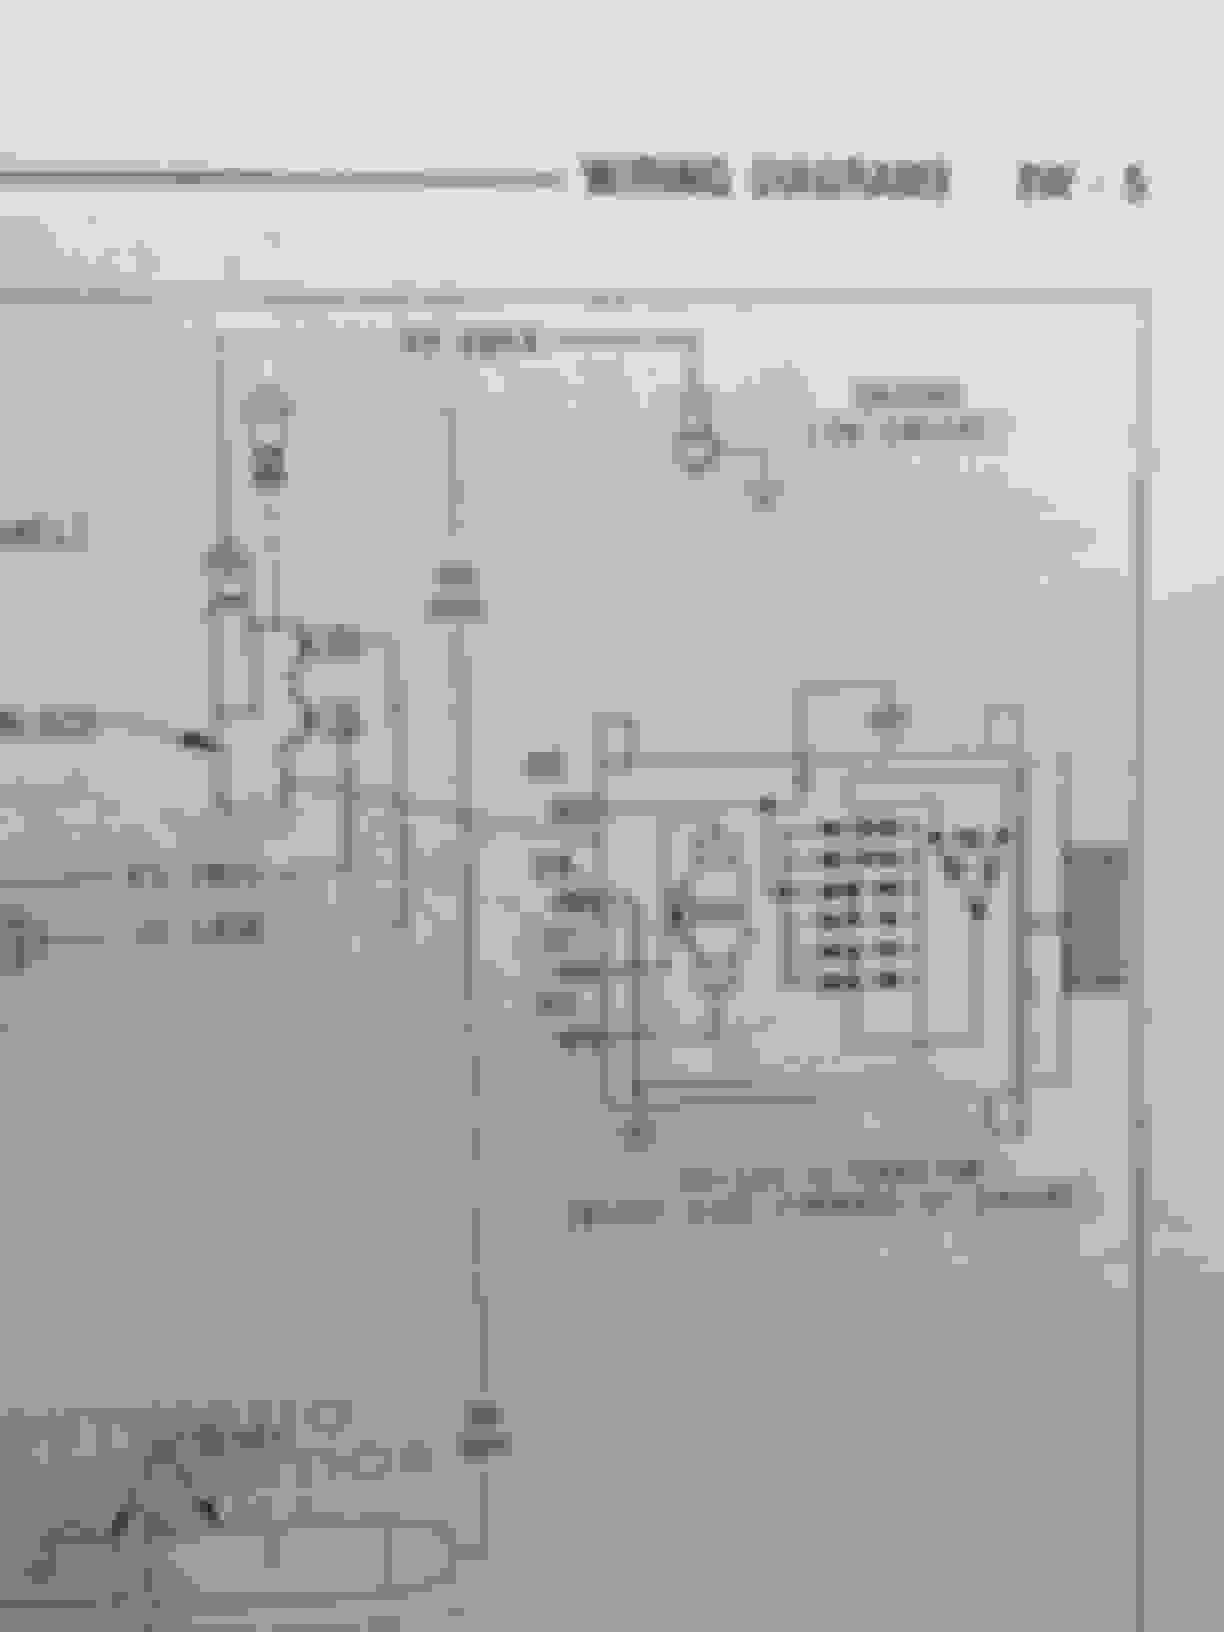 1993 6bt Wiring Diagram